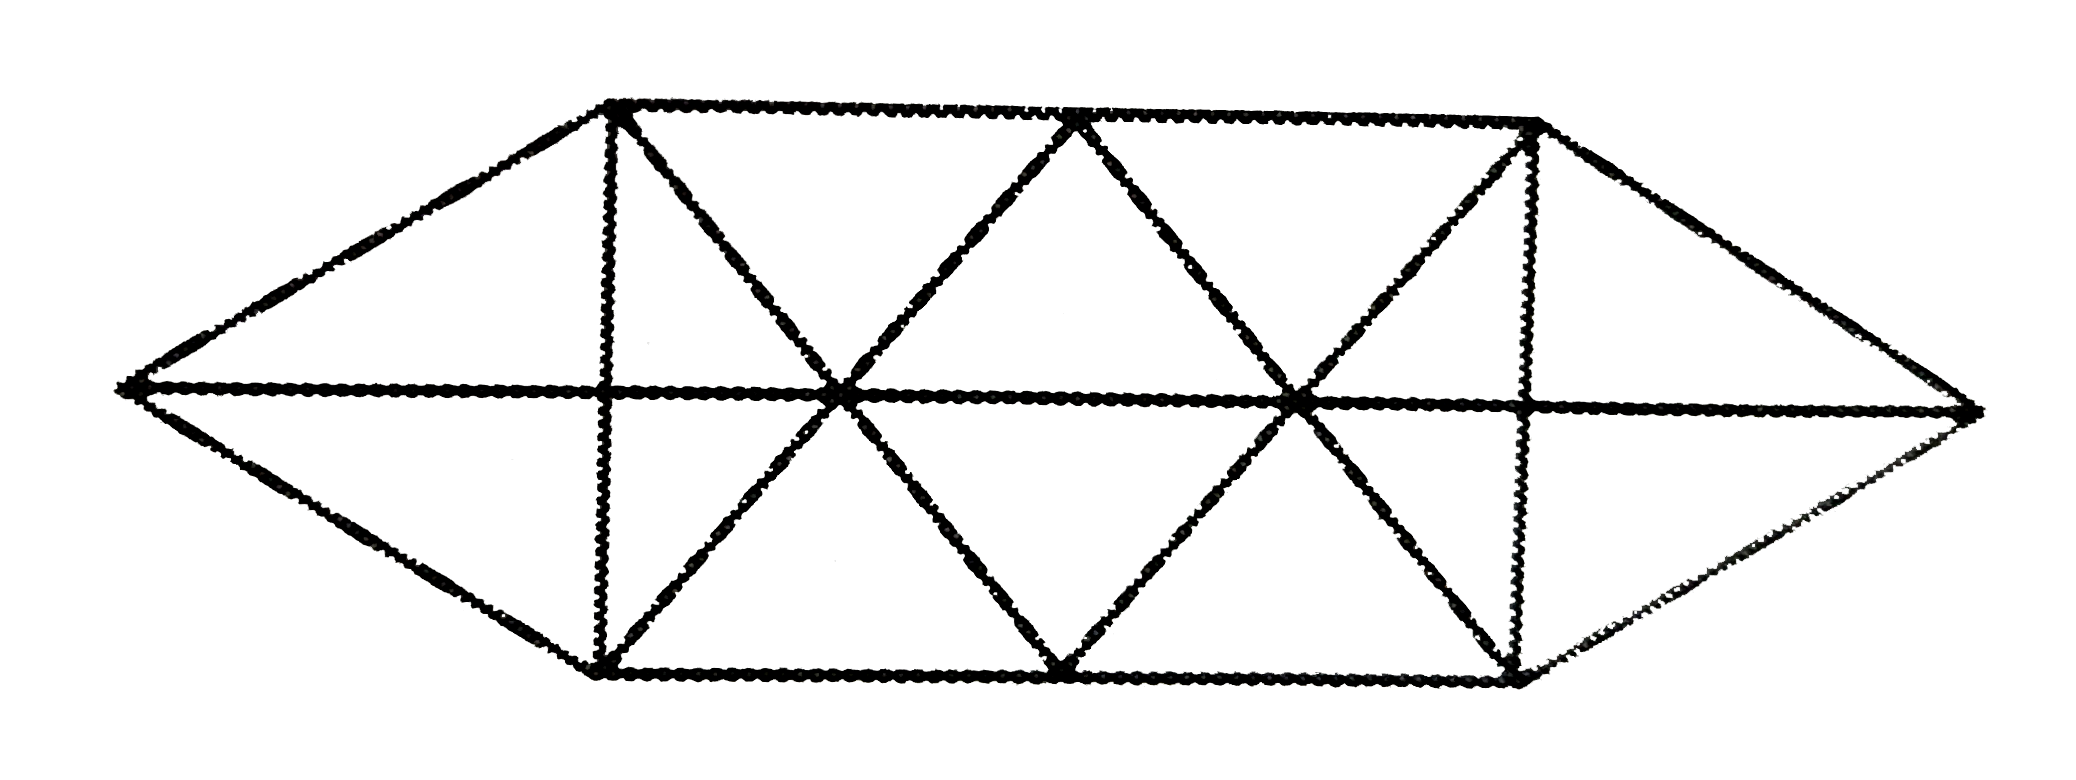 इस आकृति में कितने त्रिभुज है ?